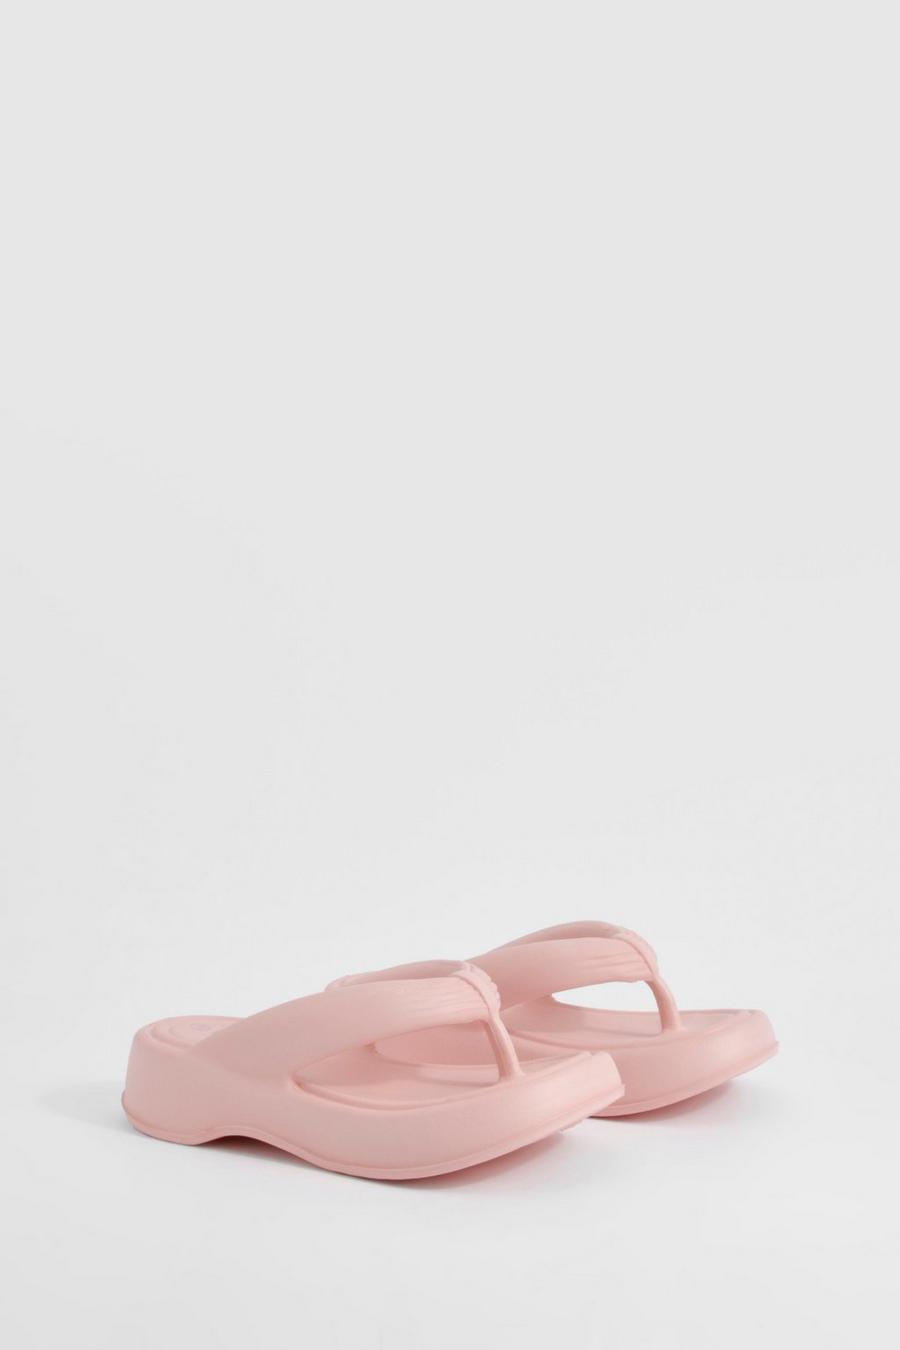 Klobige eckige Platform Flip-Flops, Baby pink